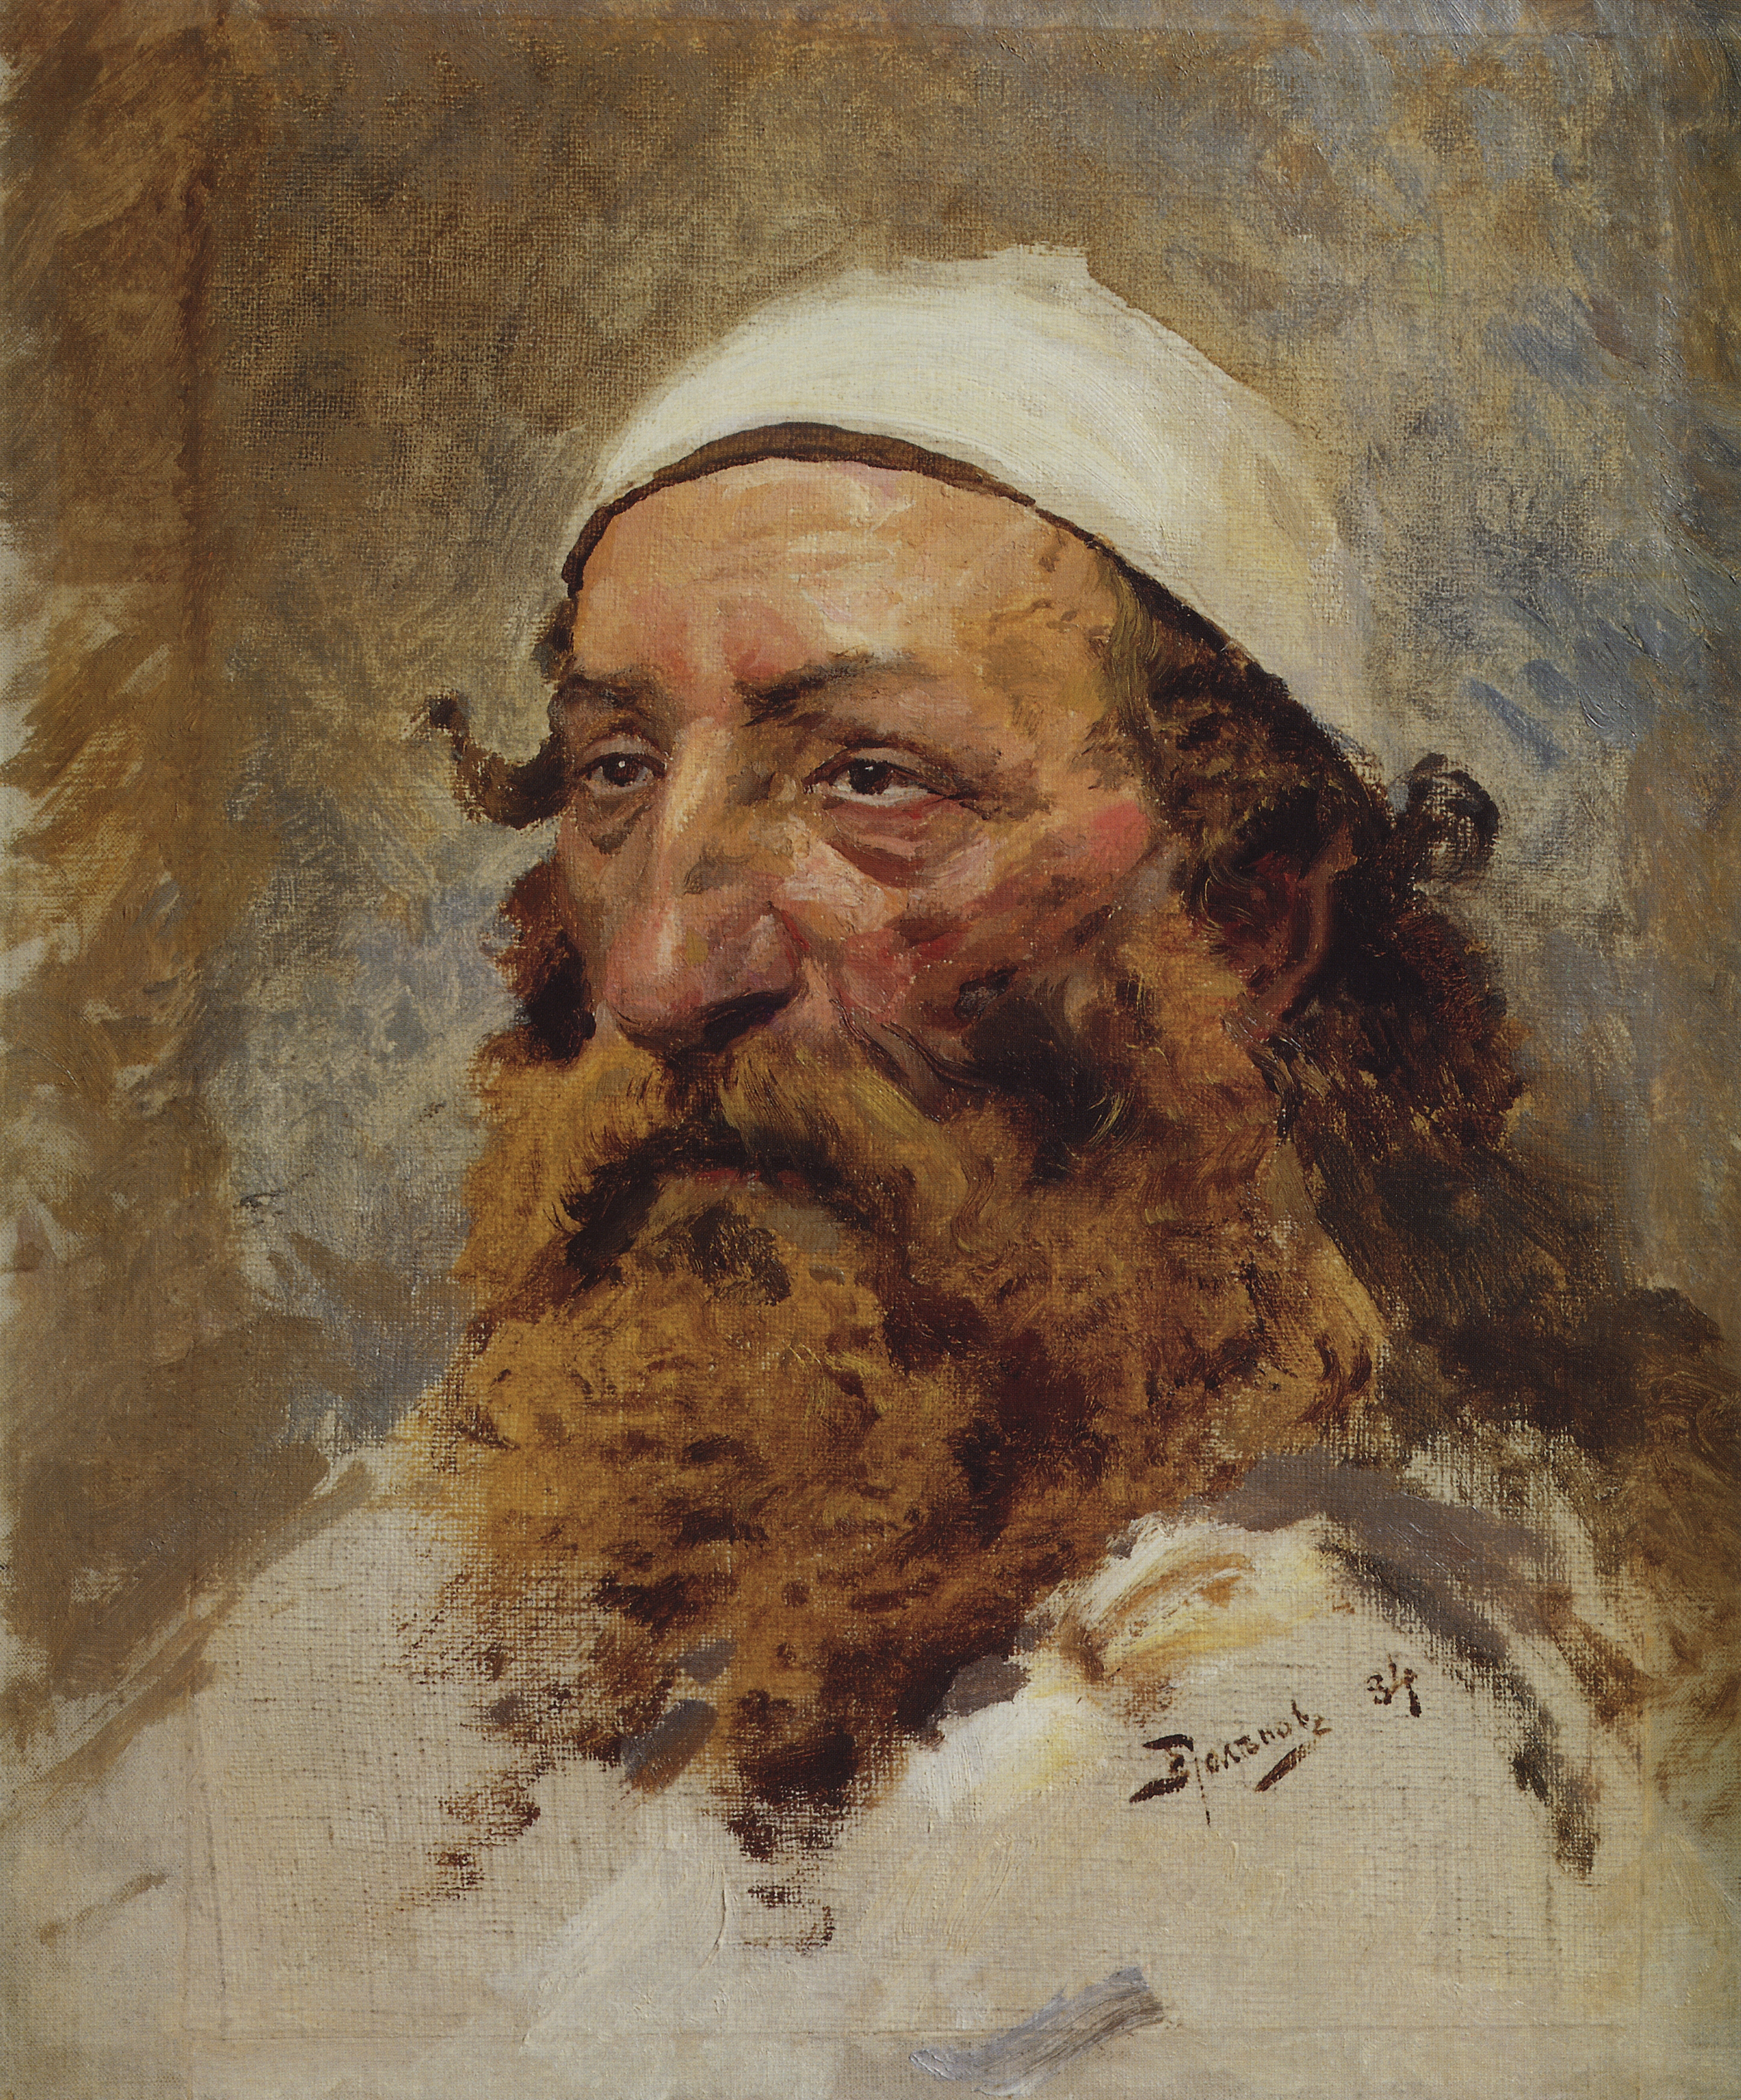 Поленов. Голова еврея. 1884